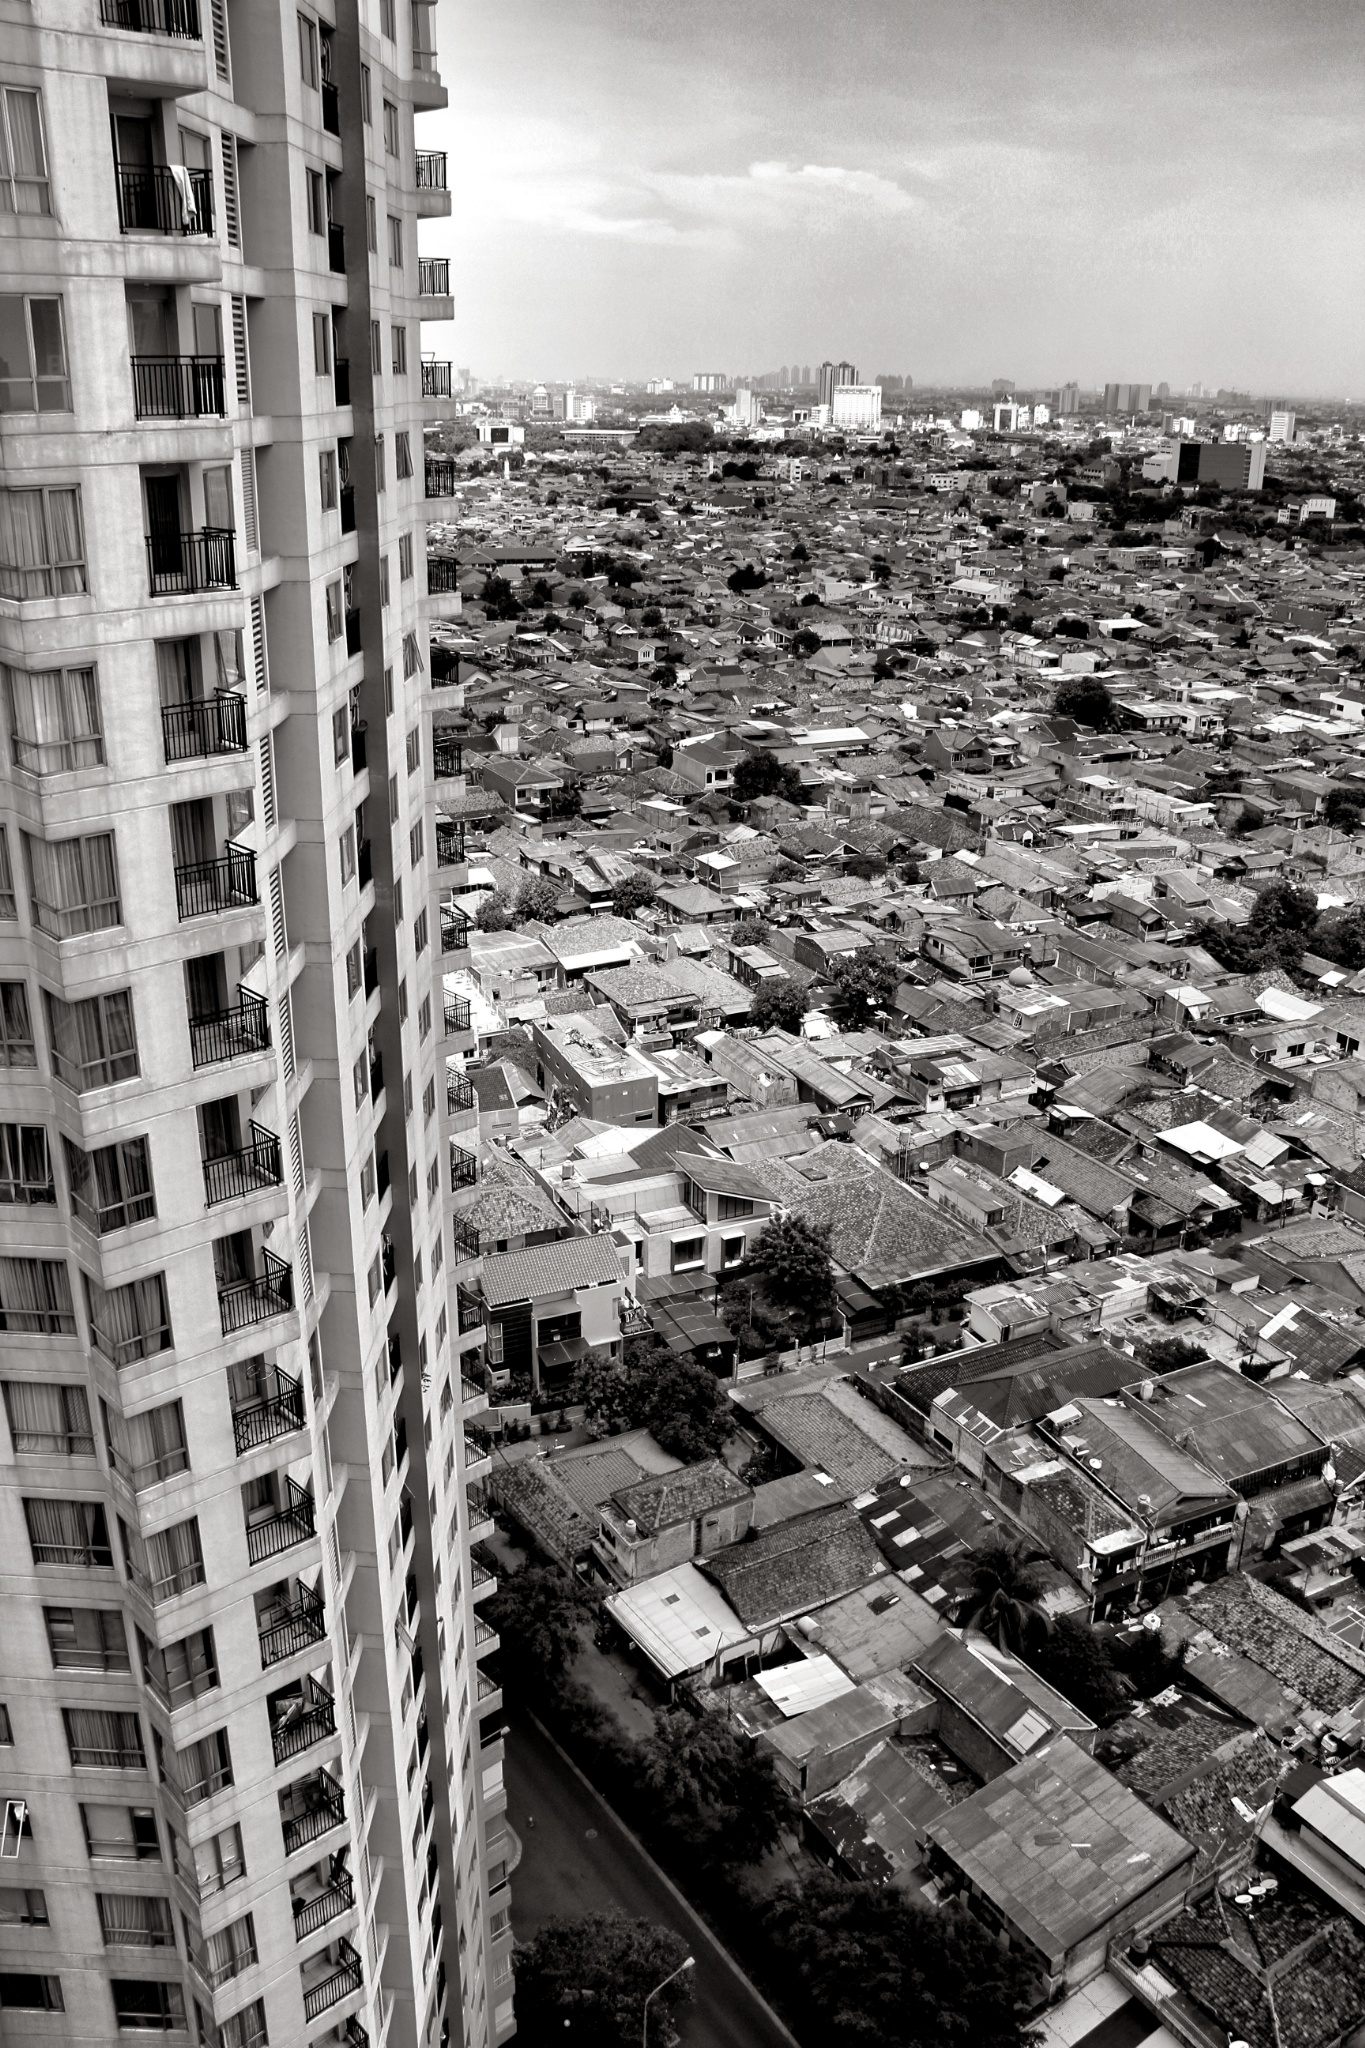 High rise towering over slum